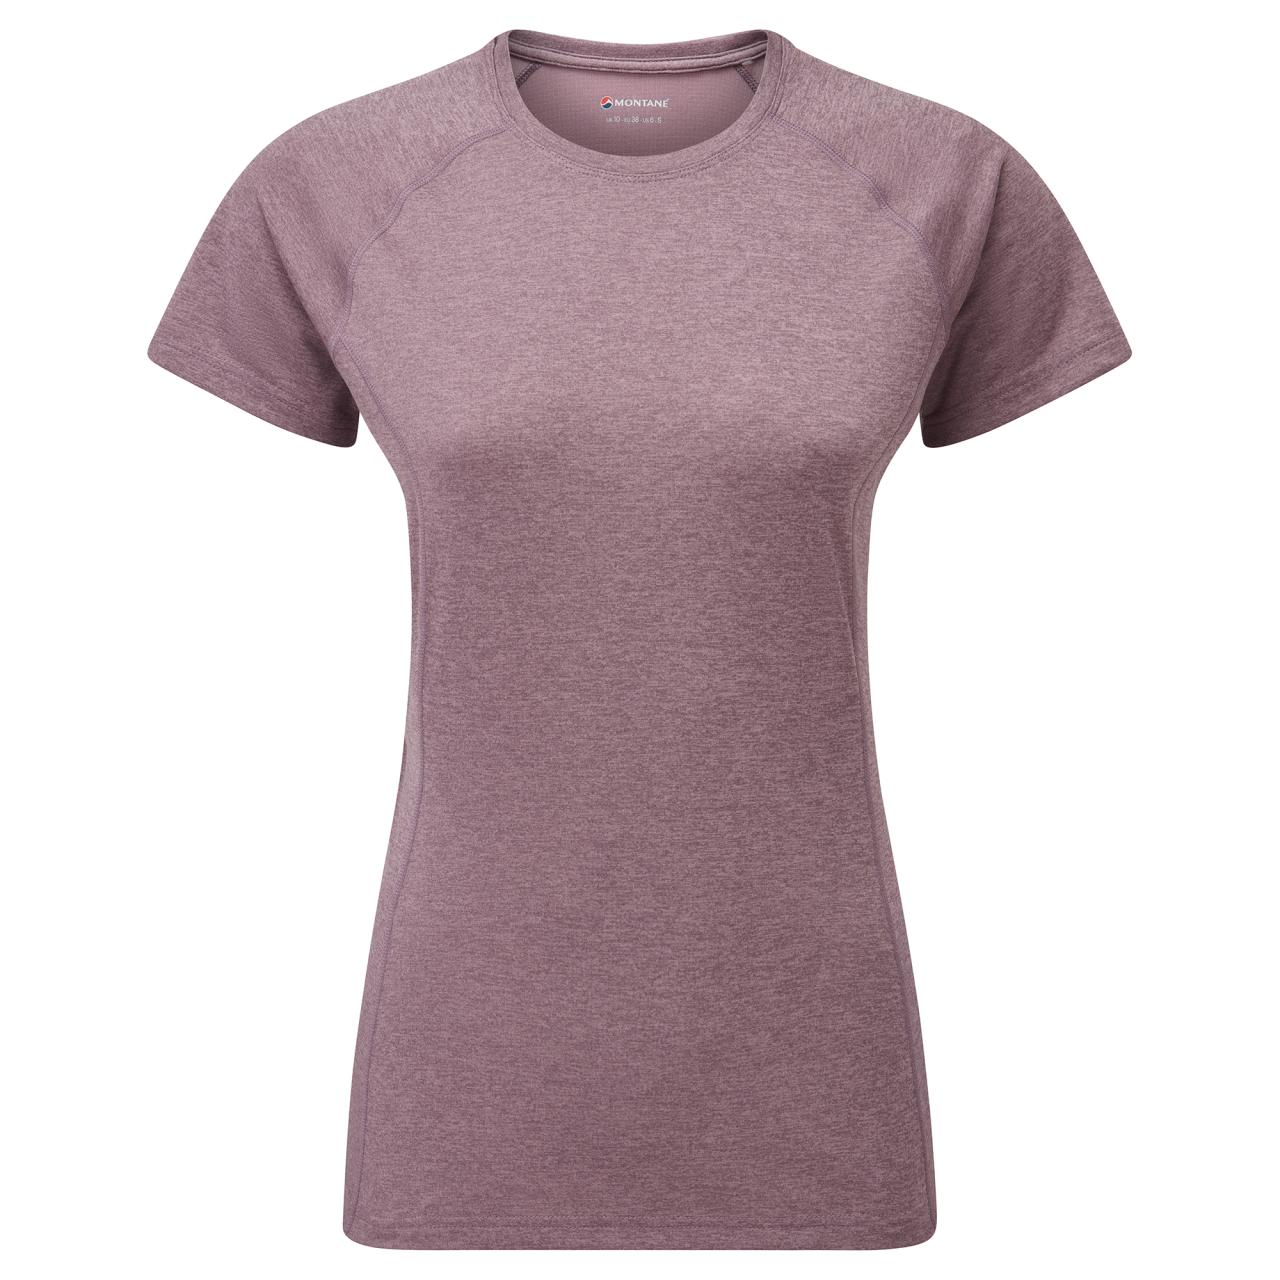 FEM DART T-SHIRT-MOONSCAPE-UK18/XXL dámské triko šedofialové